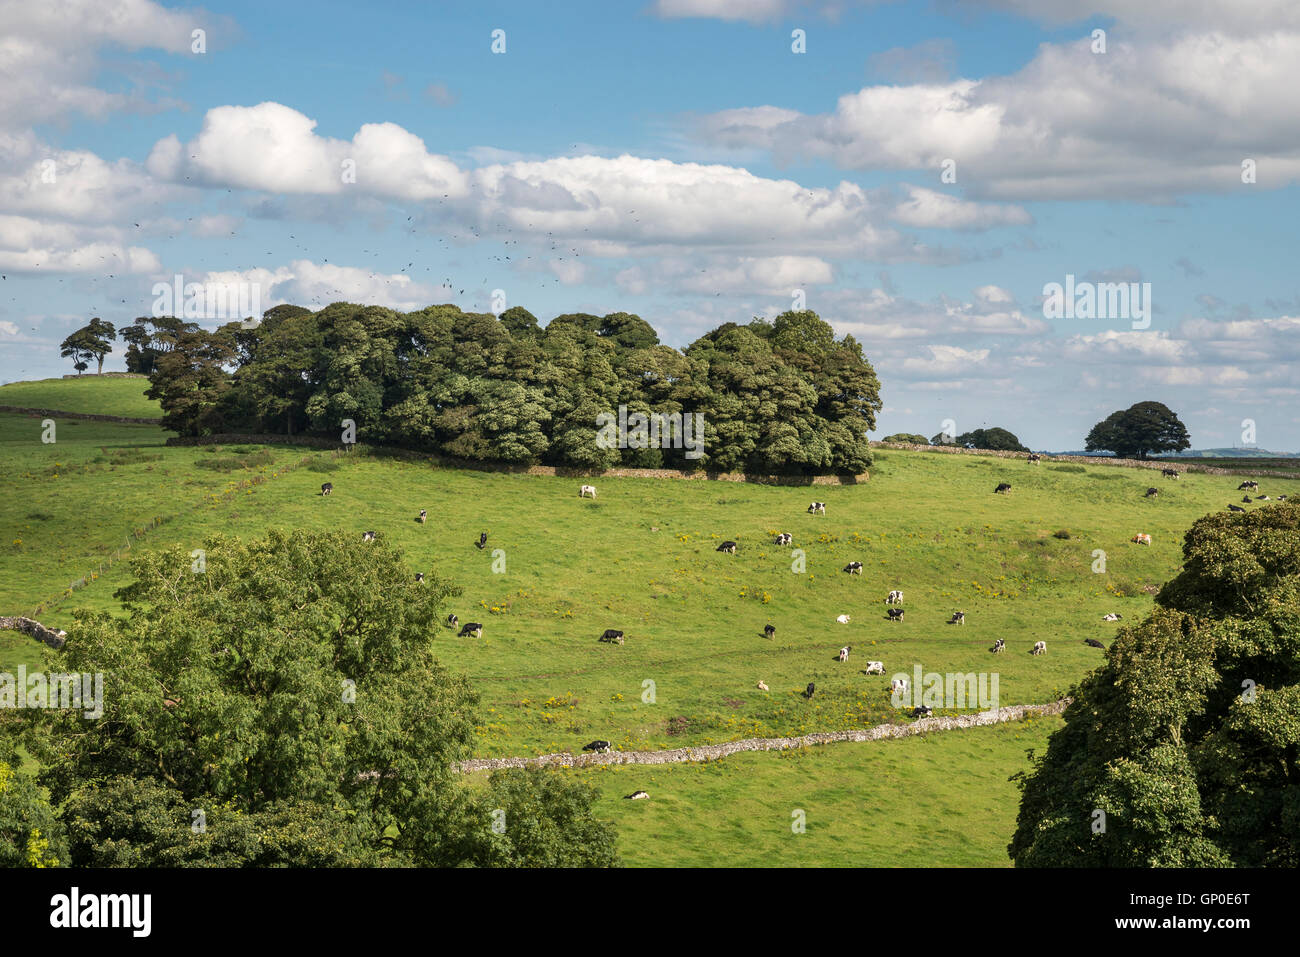 Le mucche al pascolo su una verde collina nella campagna inglese in estate. Foto Stock